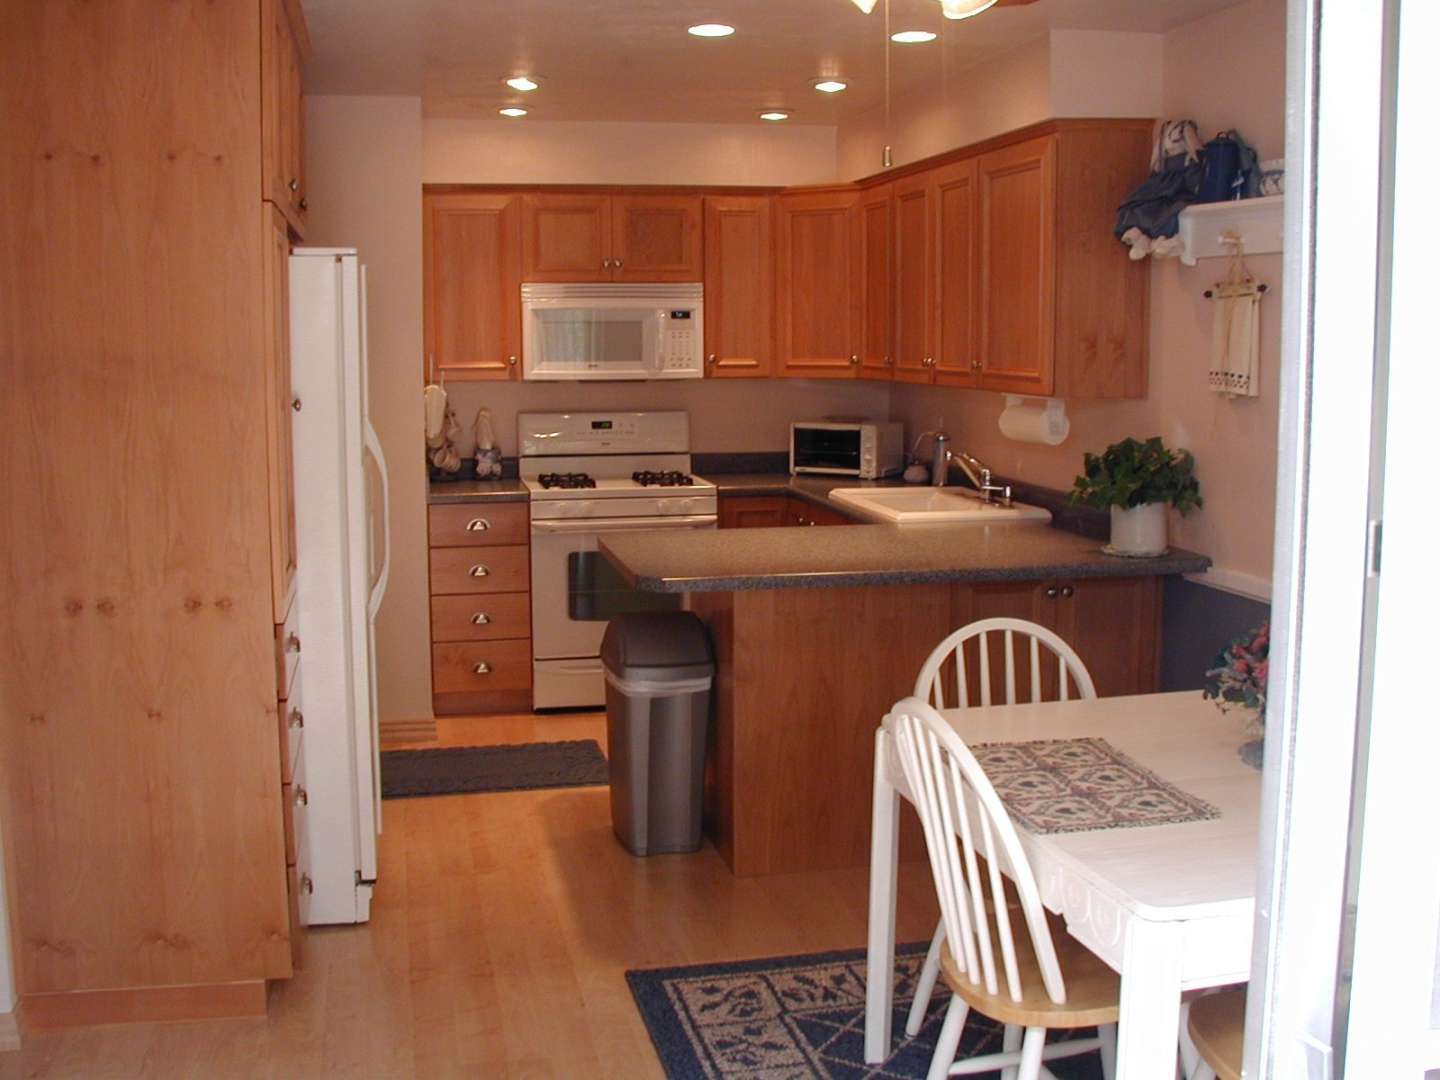 Lighting in kitchen with no island? (floor, paneling, countertops